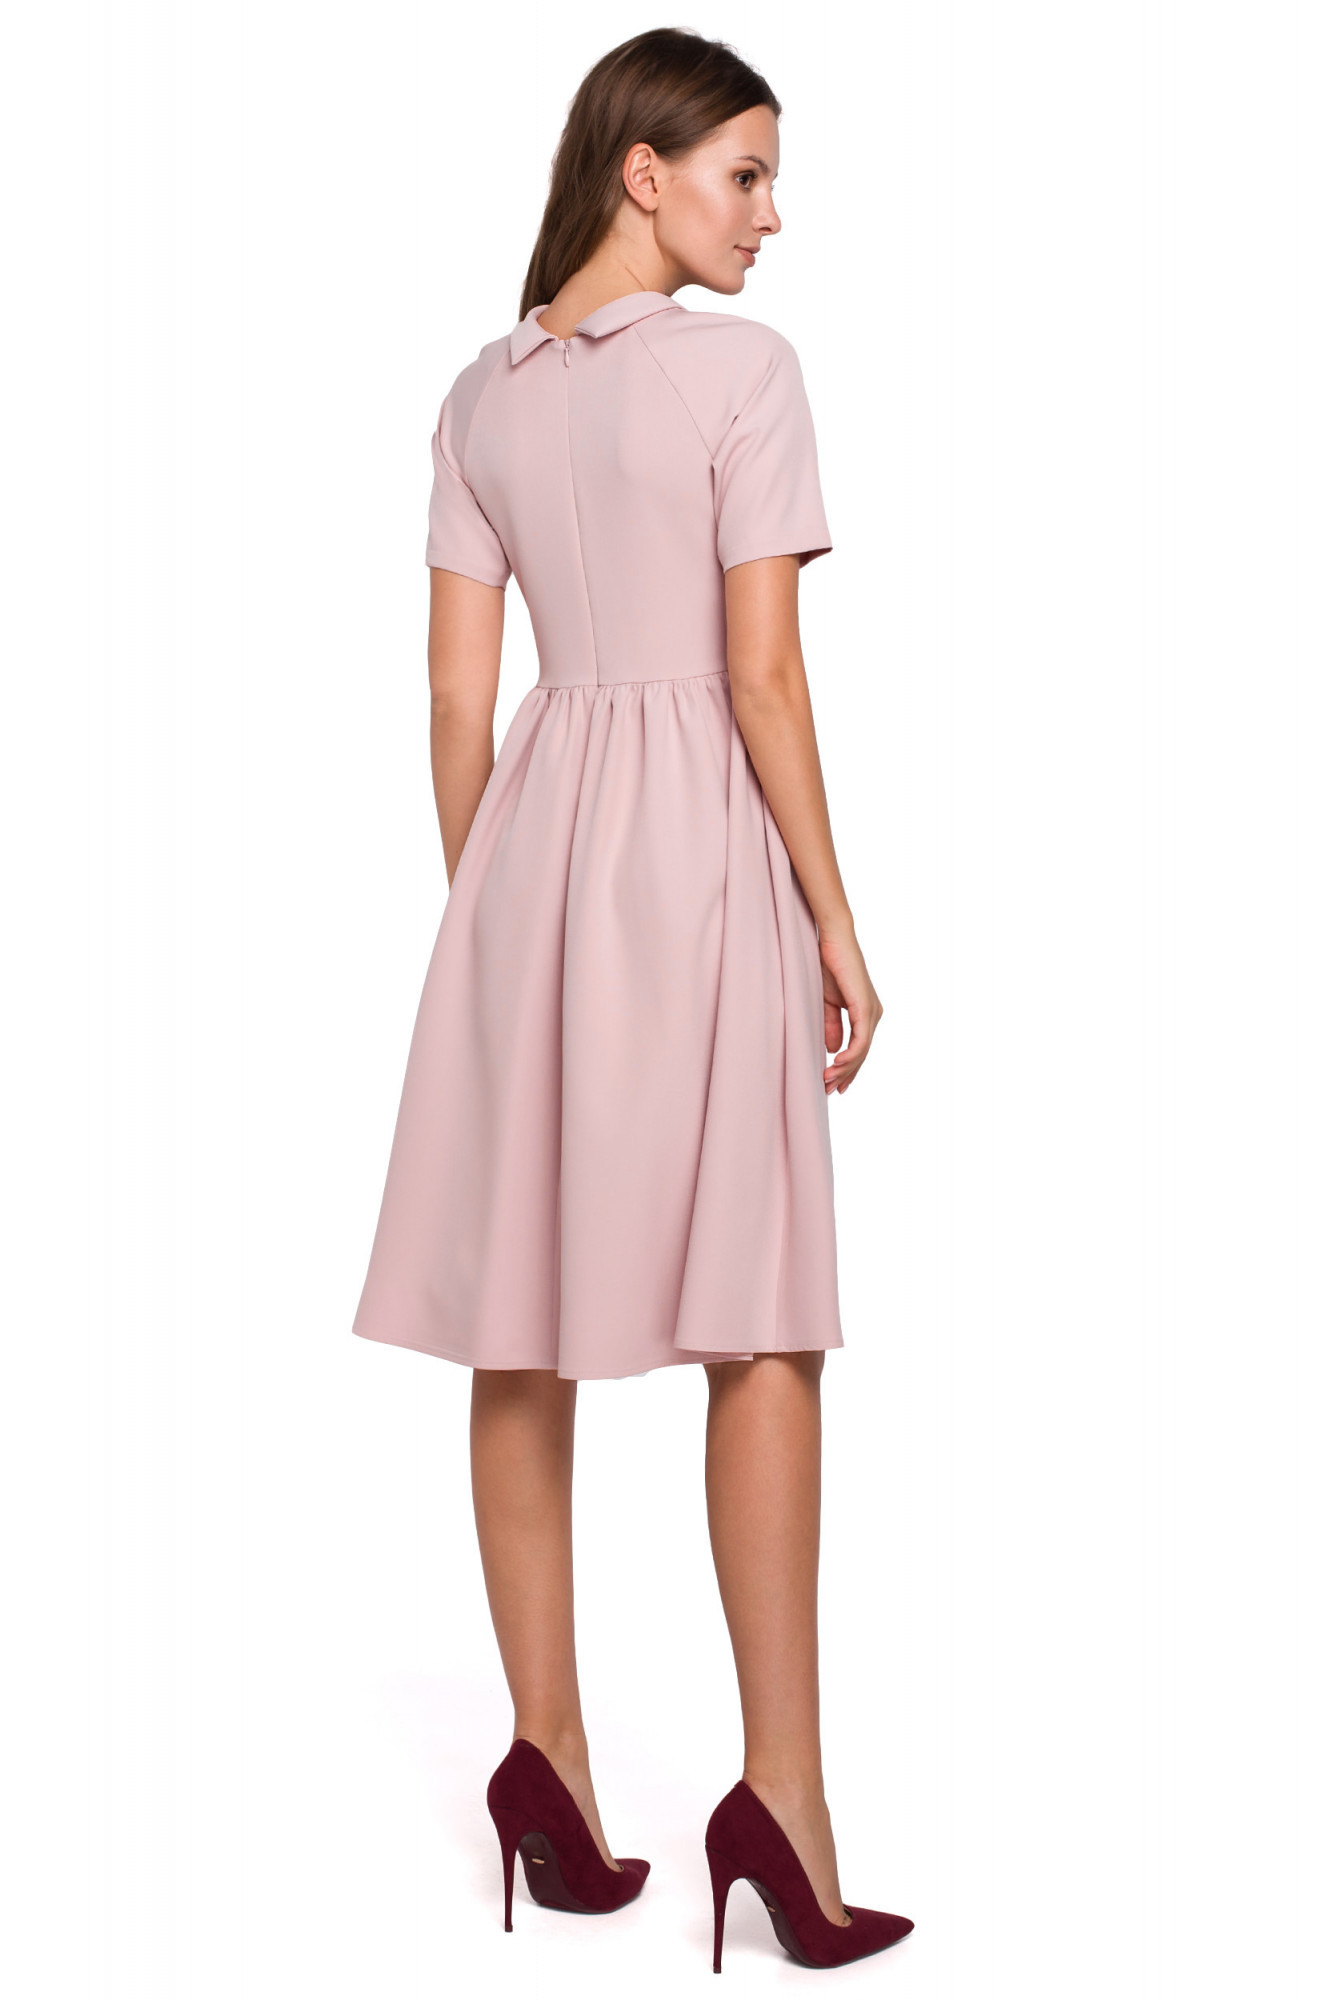 Dámské šaty K028 pudr růžová - Makover pudrovo-růžová XL